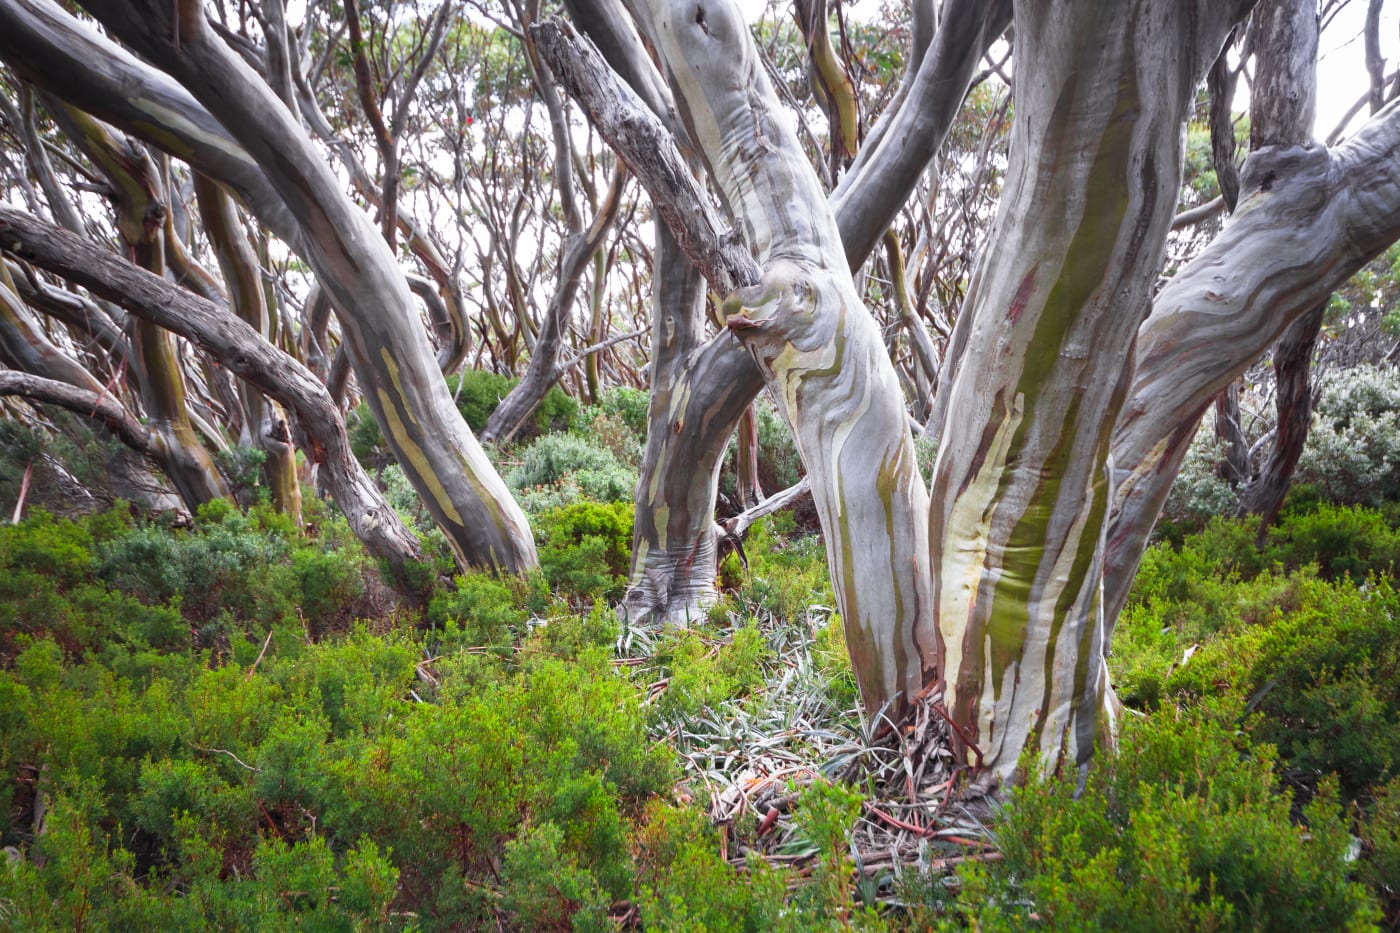 Snow gum trees (Eucalyptus pauciflora) in Baw Baw National Park, Australia.